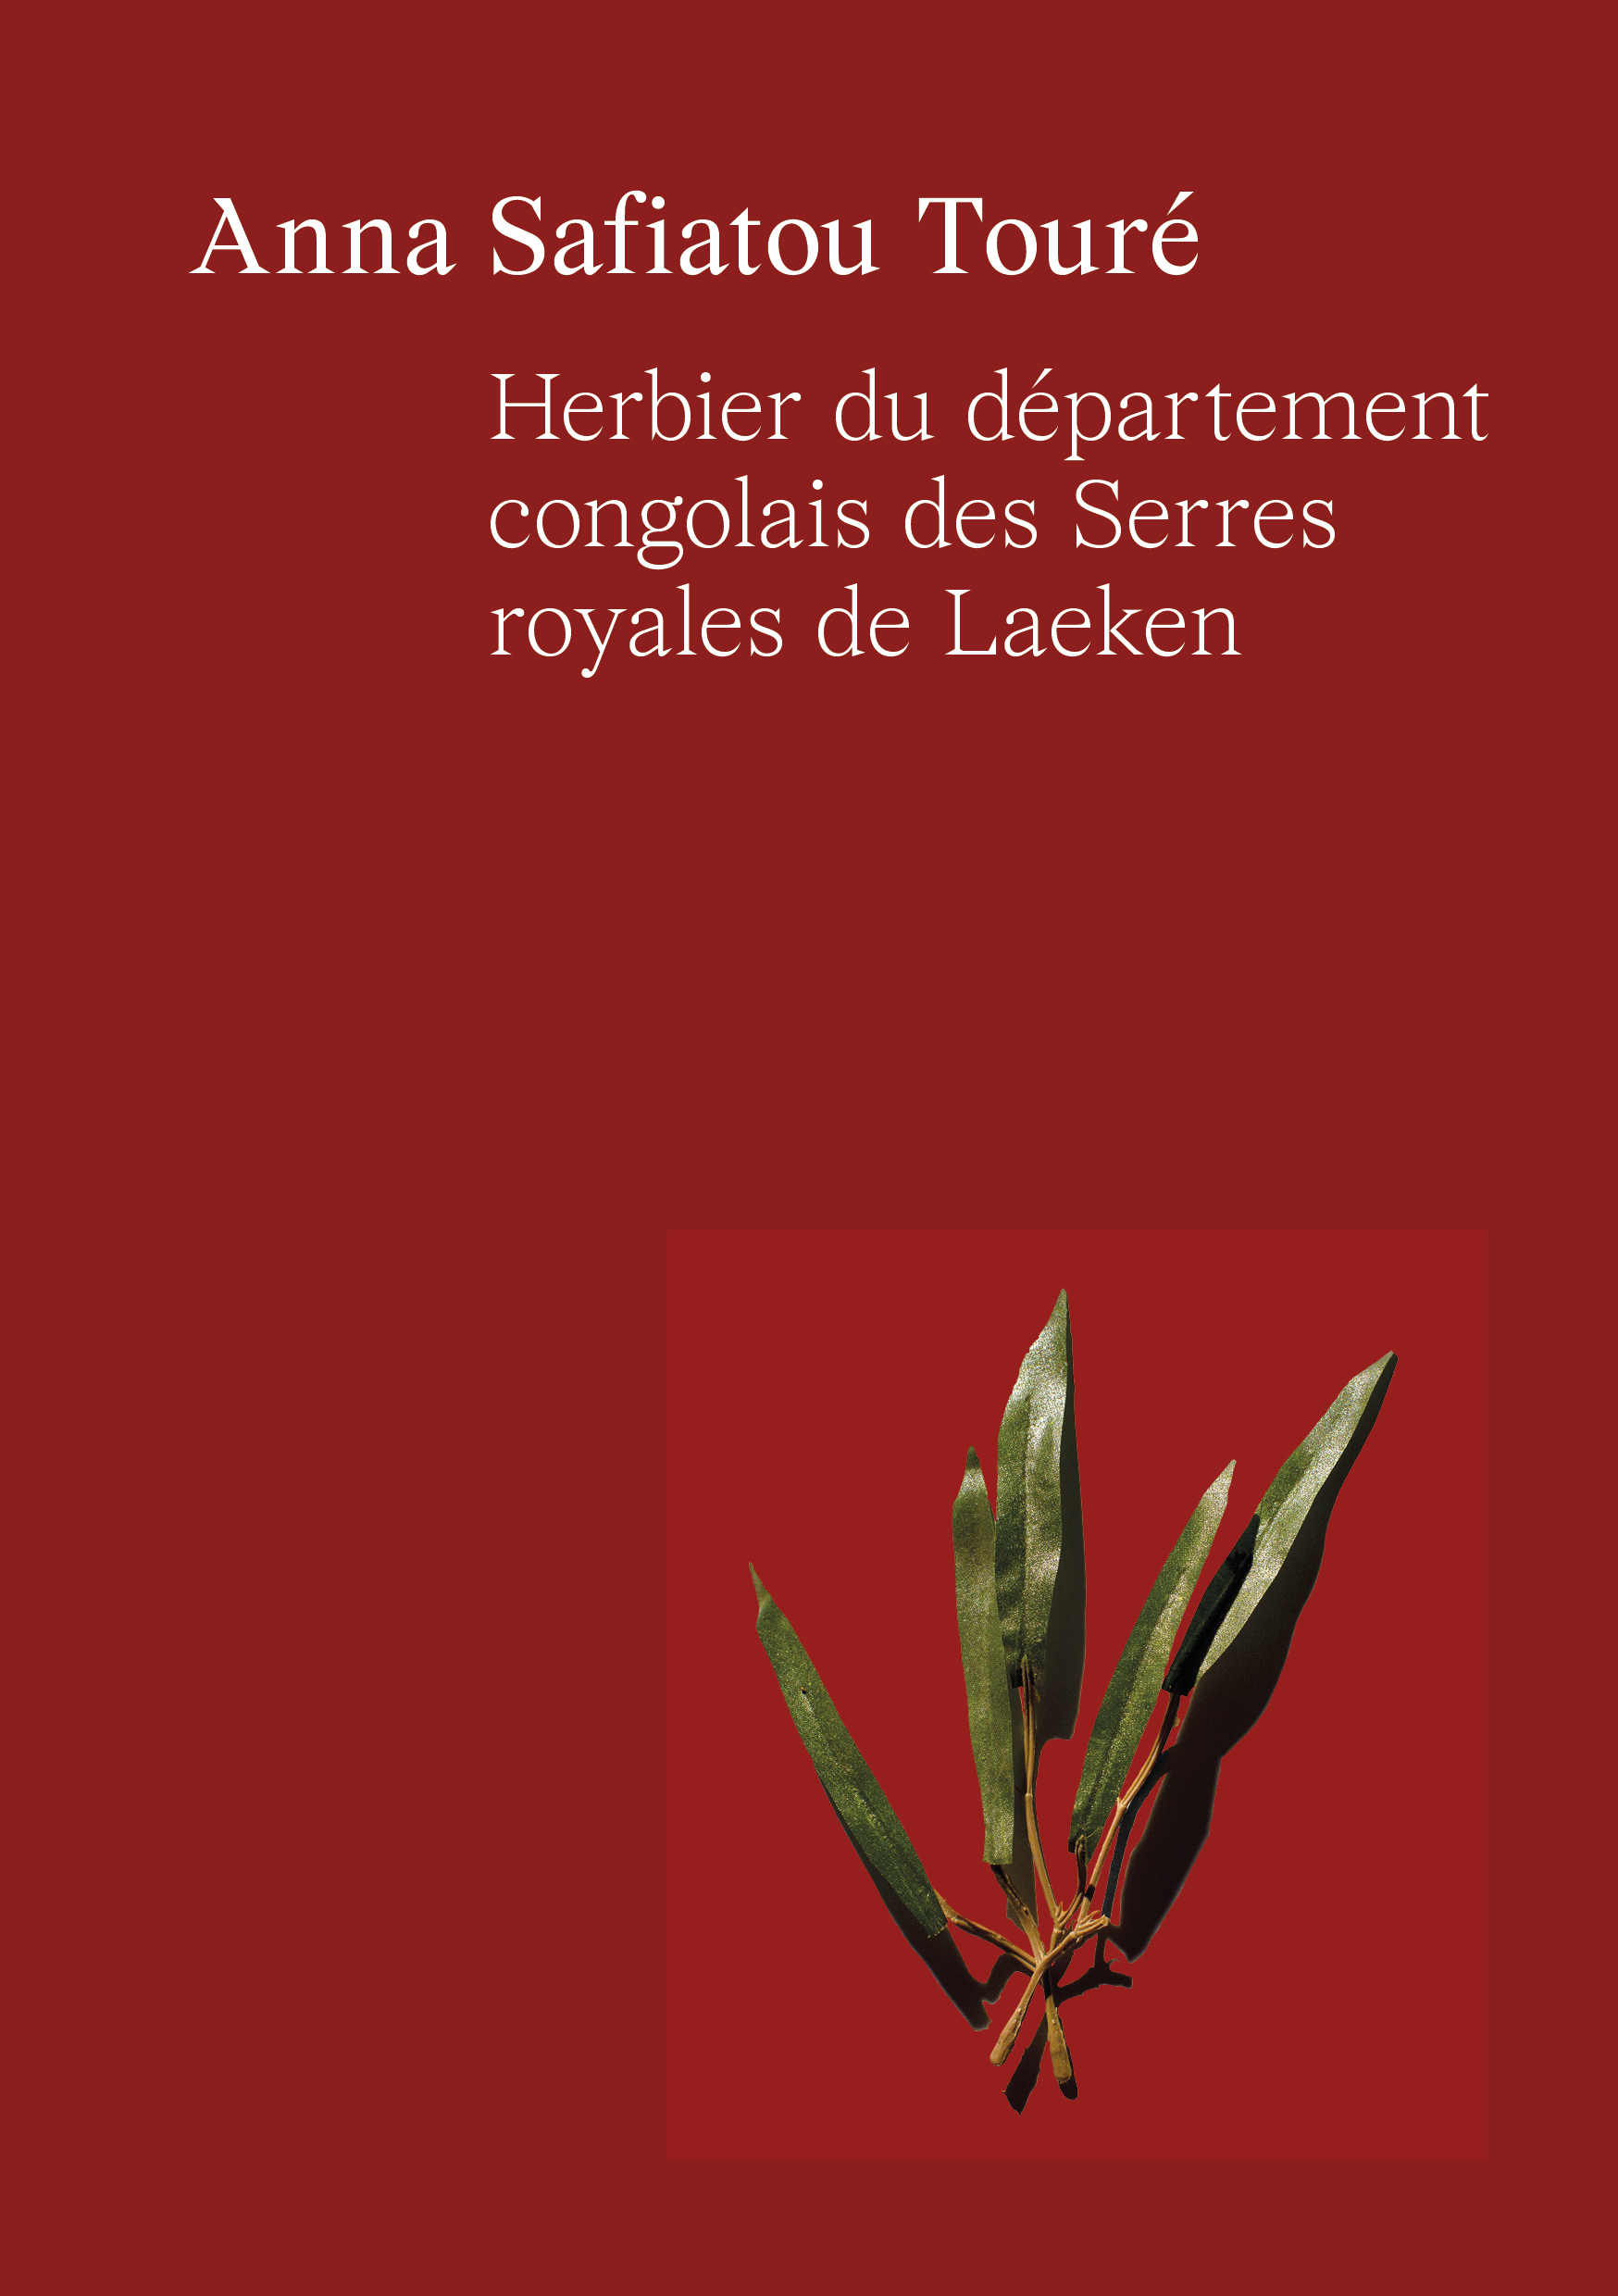 Anna Safiatou Touré Herbier du département congolais des Serres royales de Laeken Collection non-couché